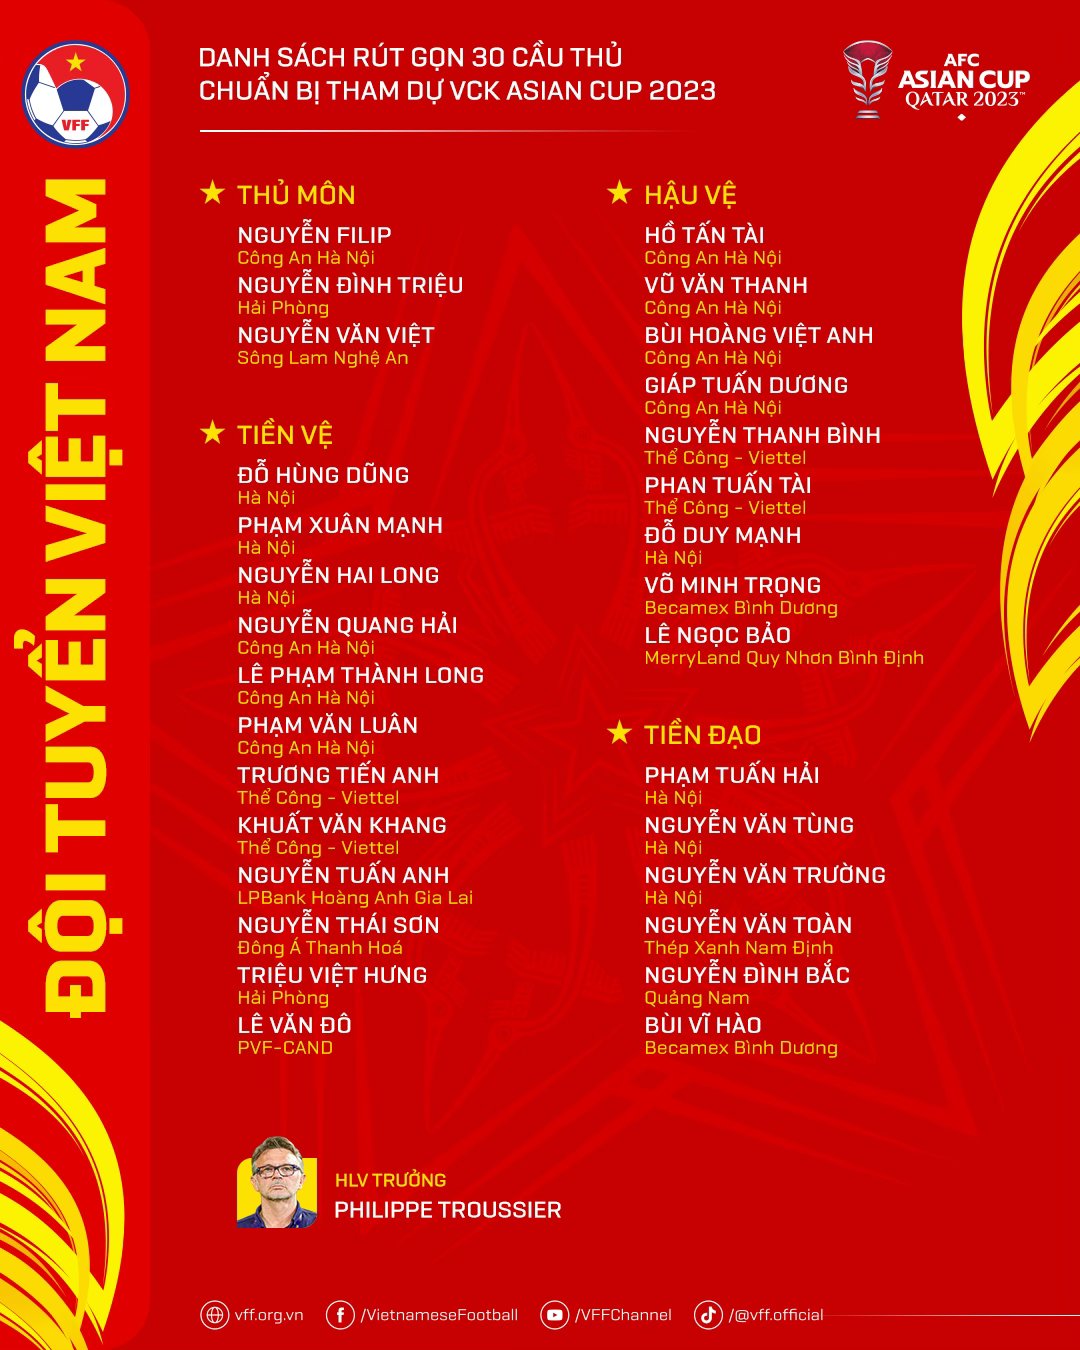 Lộ đấu pháp chiến thuật của tuyển Việt Nam tại Asian Cup 2023- Ảnh 10.